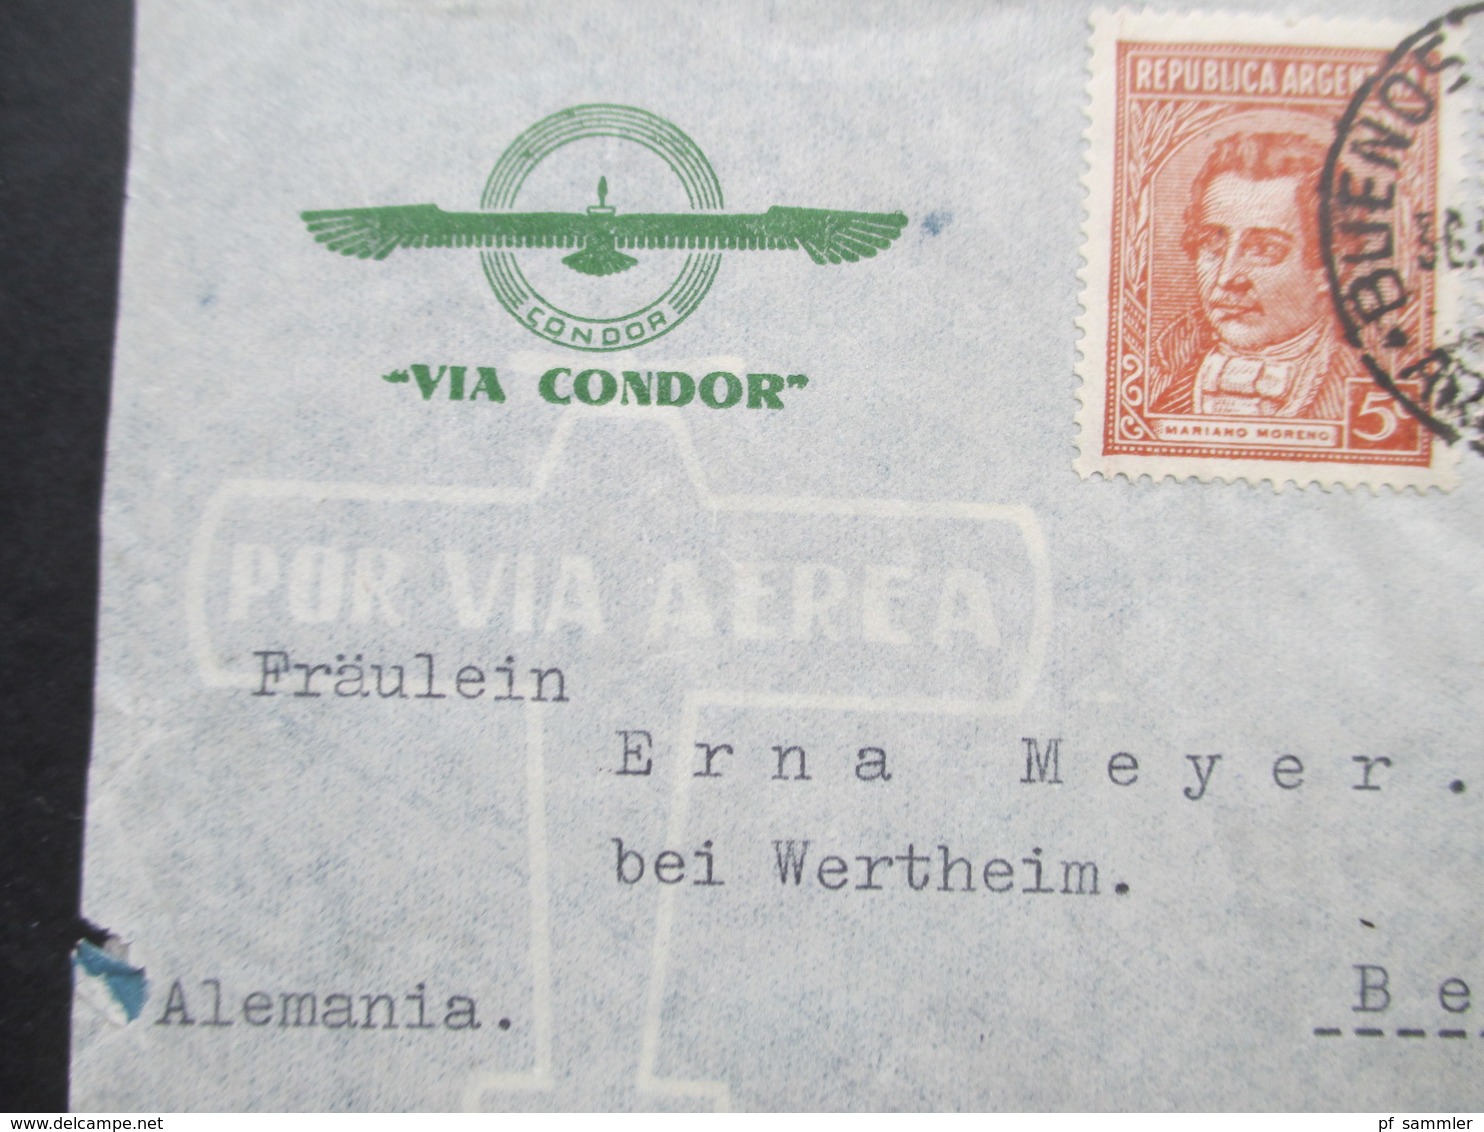 Argentinien 1940 Zensurpost Luftpost Via Condor Mit Mehrfachzensur Der Wehrmacht OKW Verschlussstreifen Geöffnet - Covers & Documents